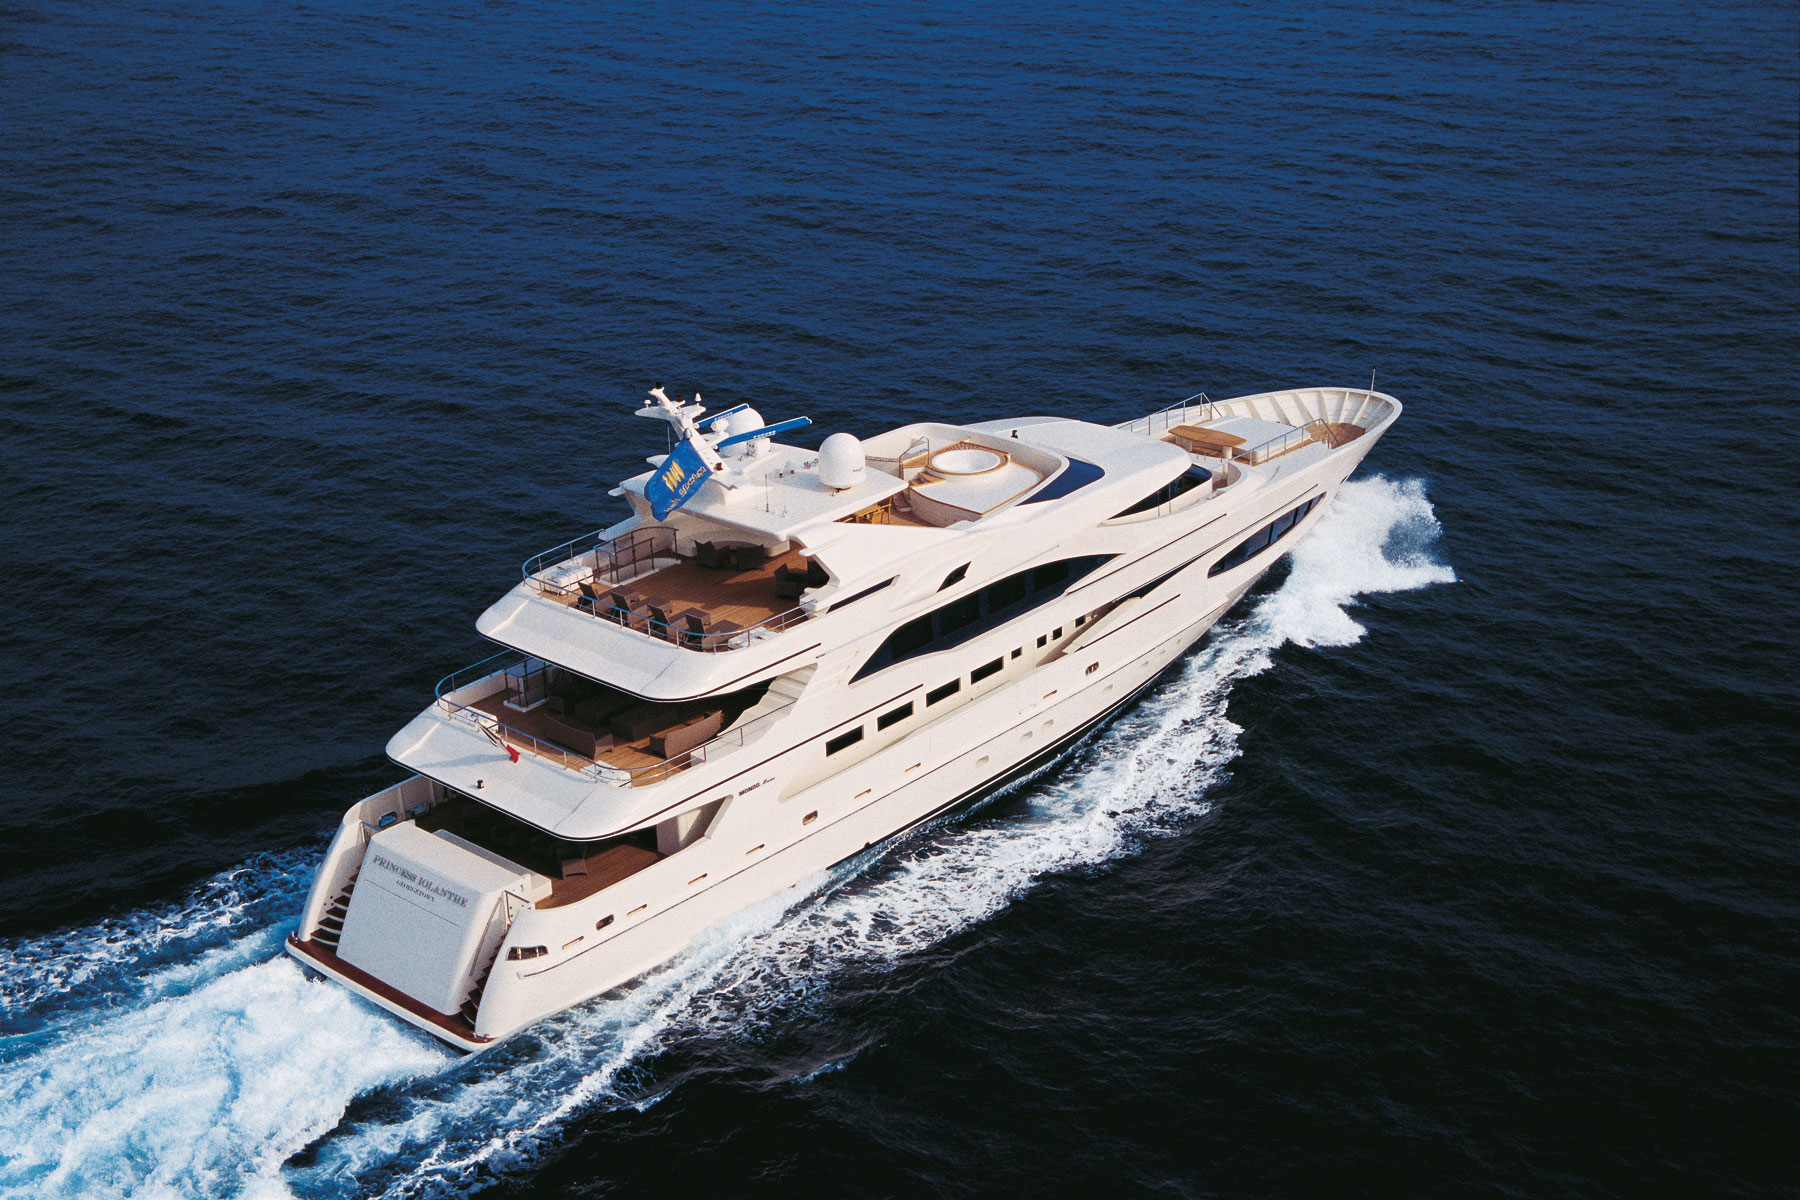 Luxury yacht Princess Iolanthe - Image courtesy of Mondo Marine